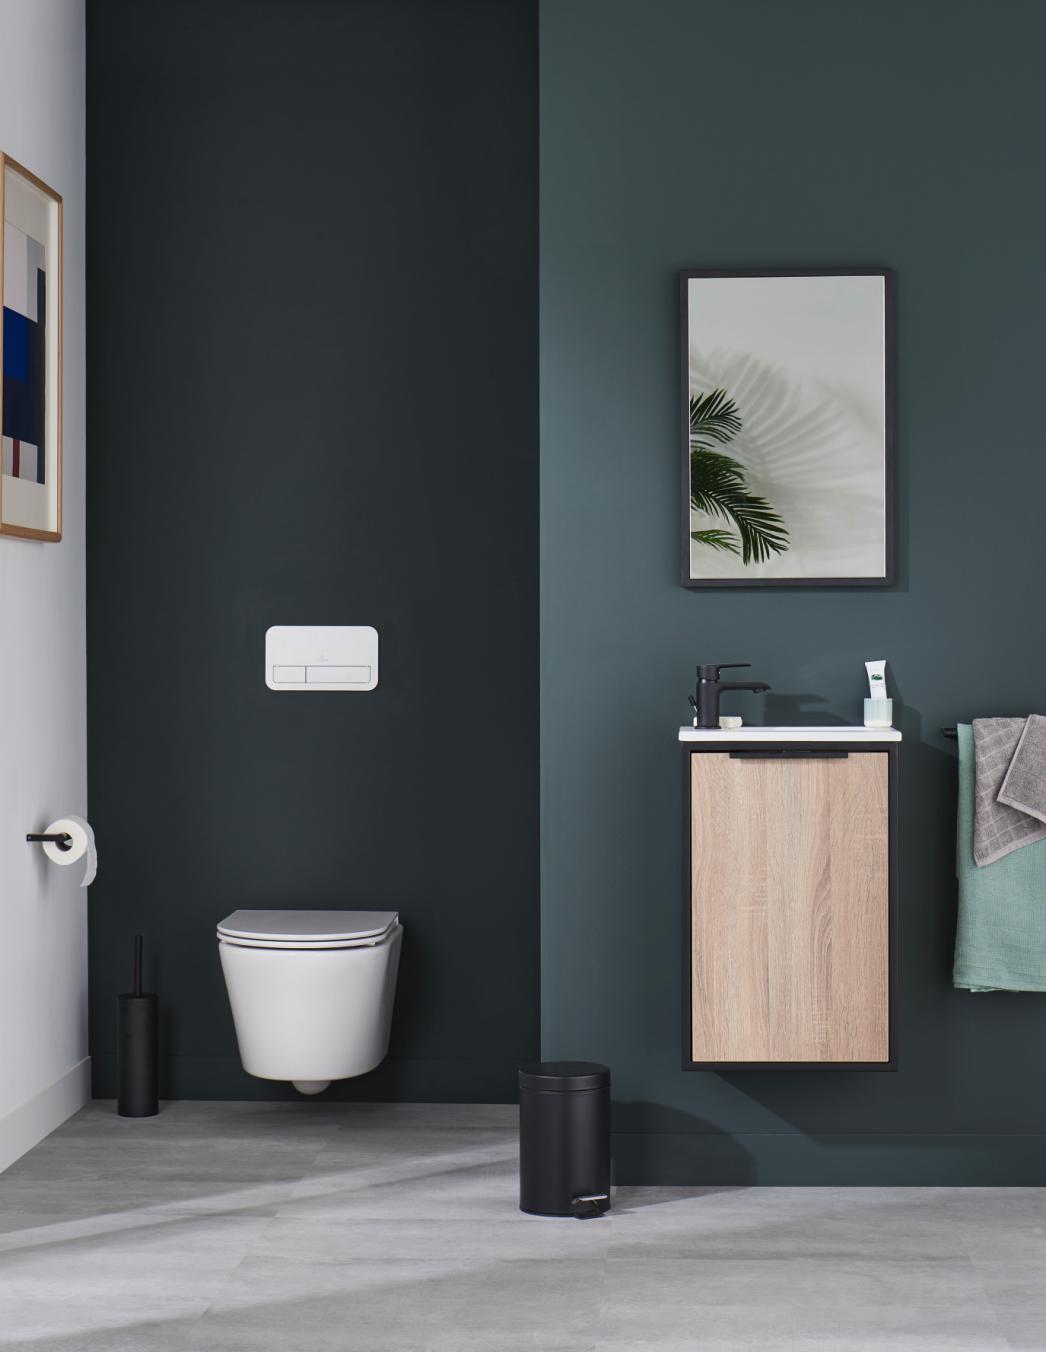 WC suspendus dans une salle de bains aux tons bleu-gris et bois